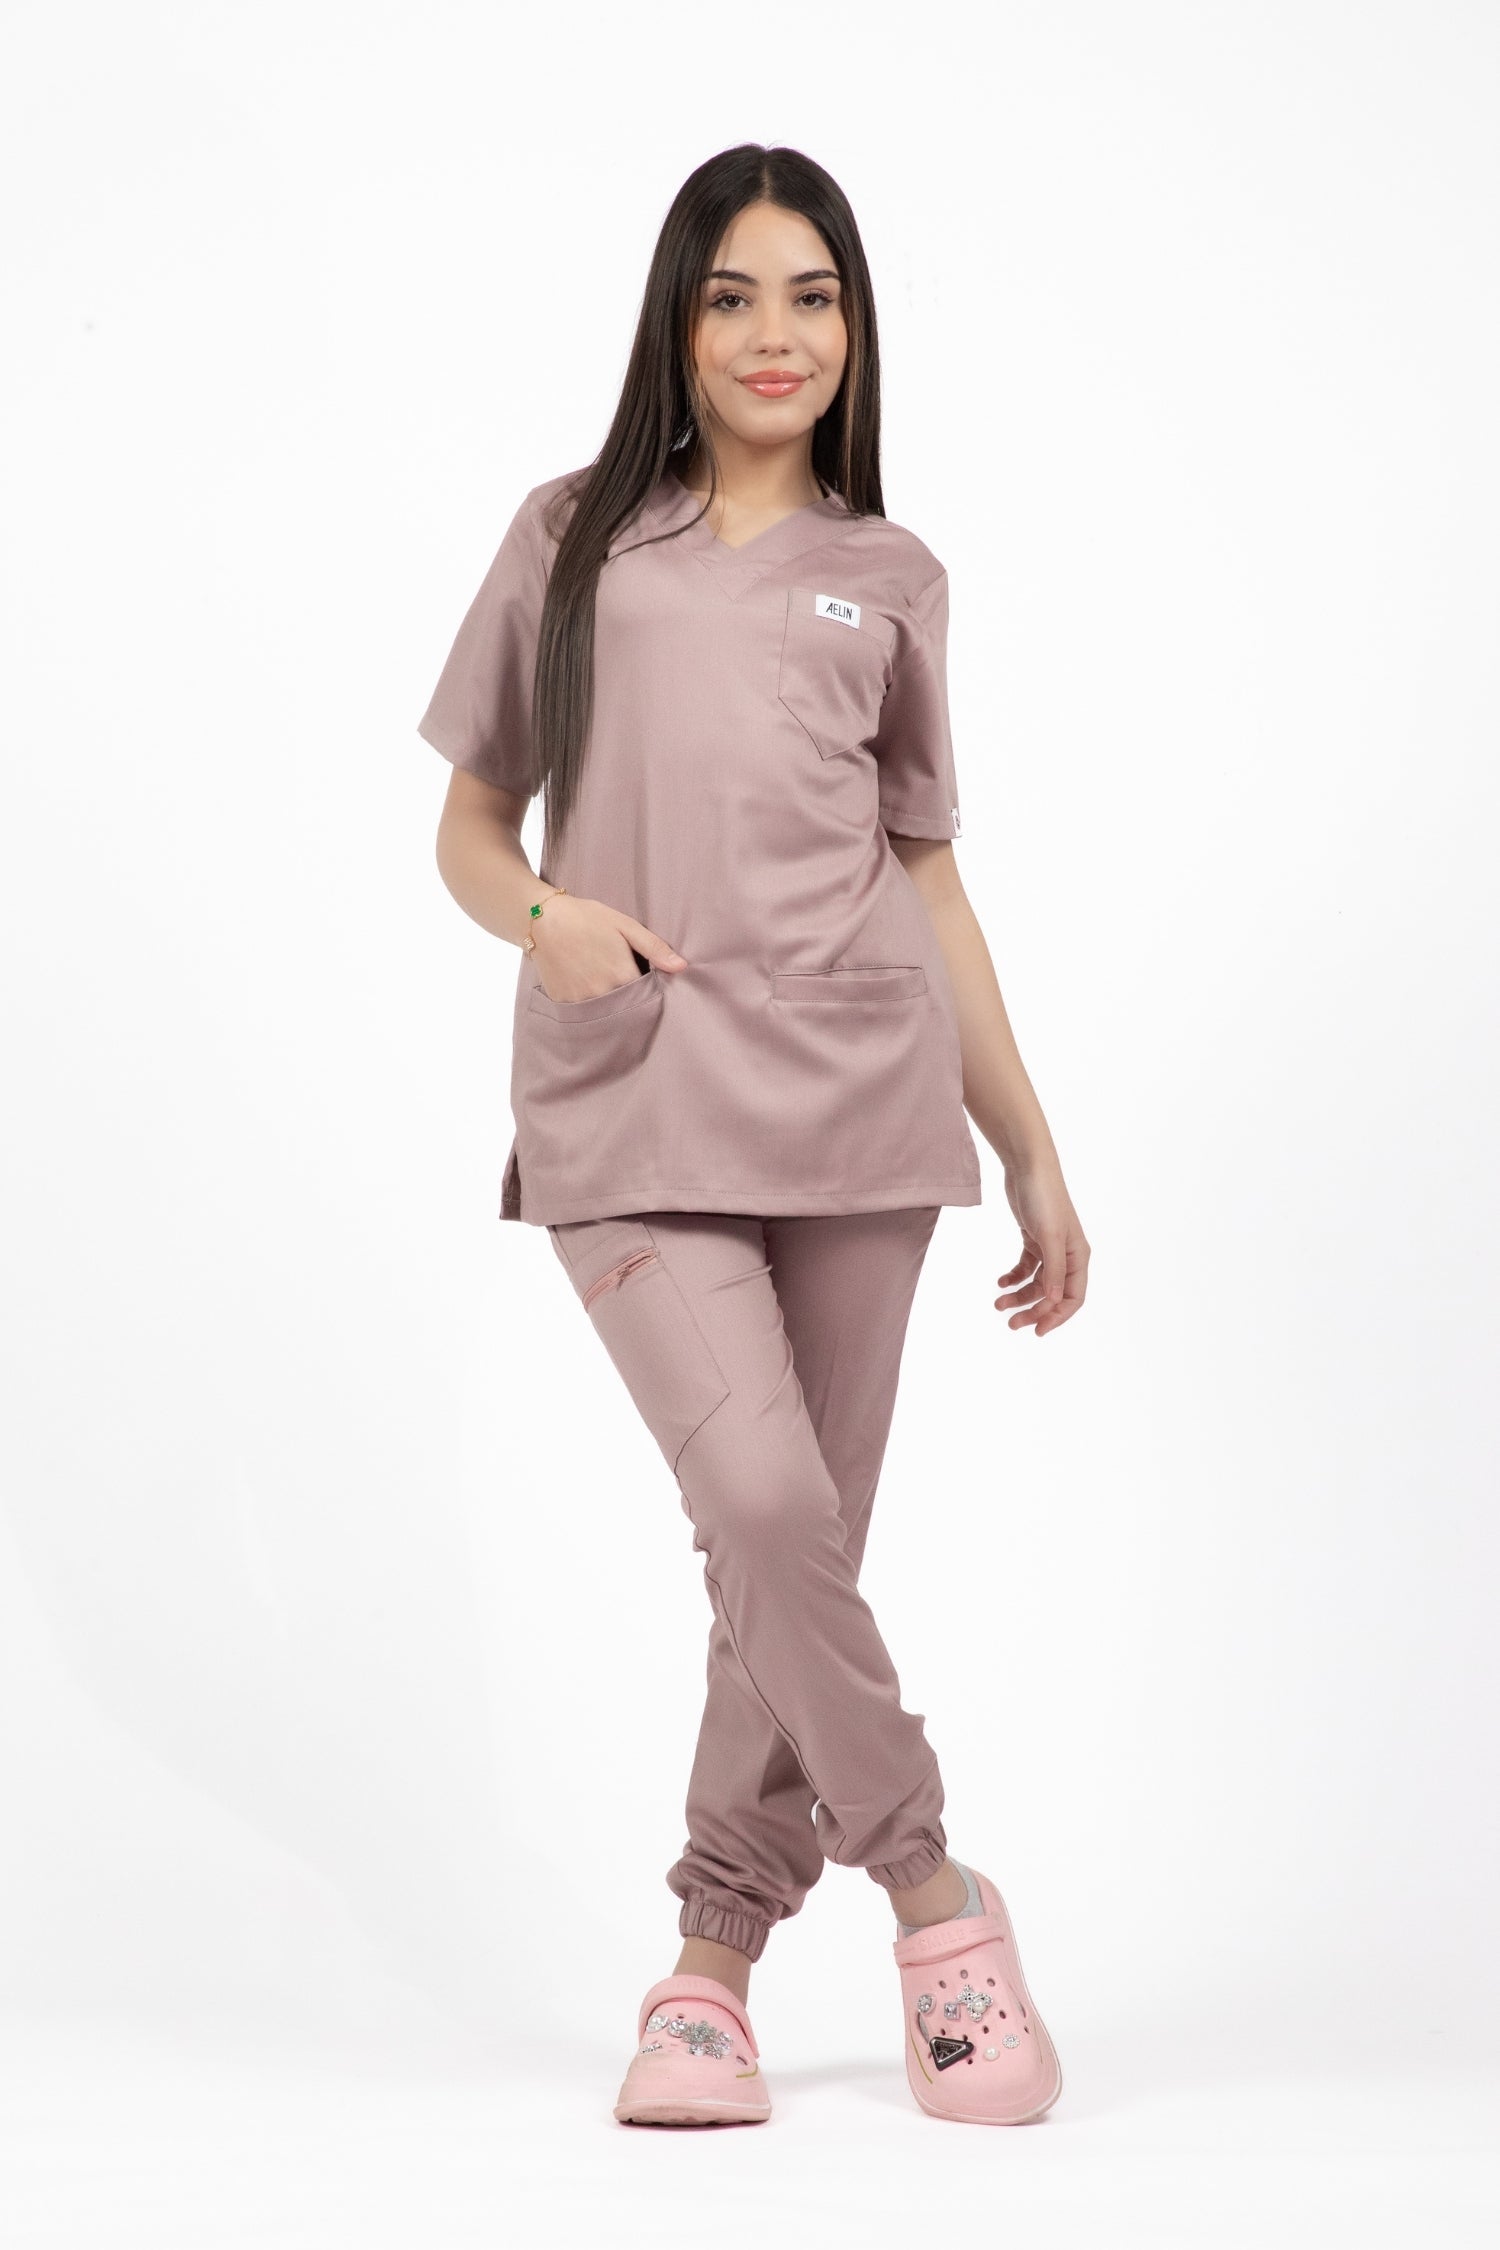 Femme en uniforme médical rose Slimfit NEW - dune blouse et dun pantalon